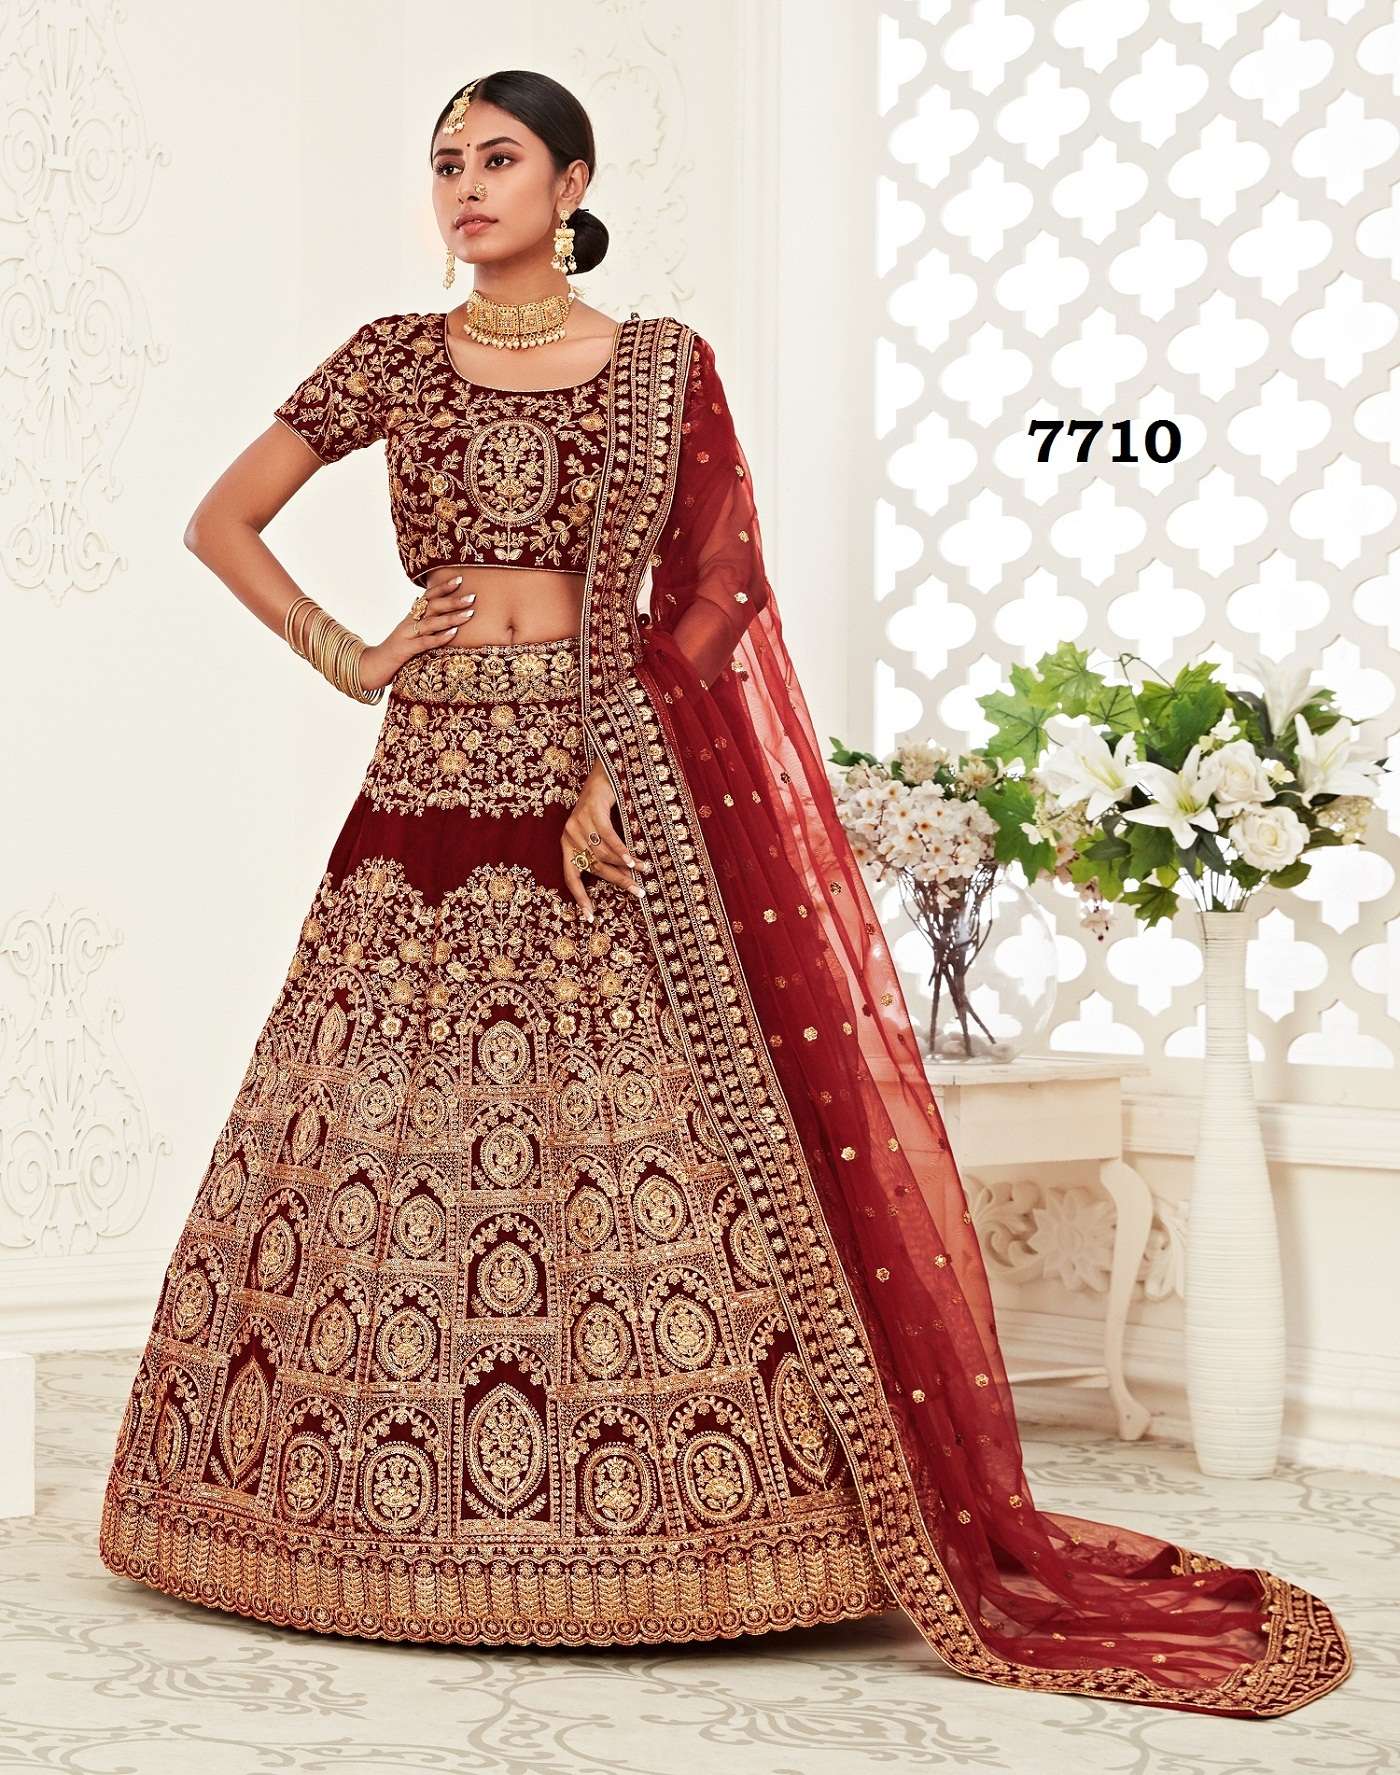 Designer Indian Party Wear Bridal Lehenga Choli Bollywood Wedding Ethnic  Lengha | eBay